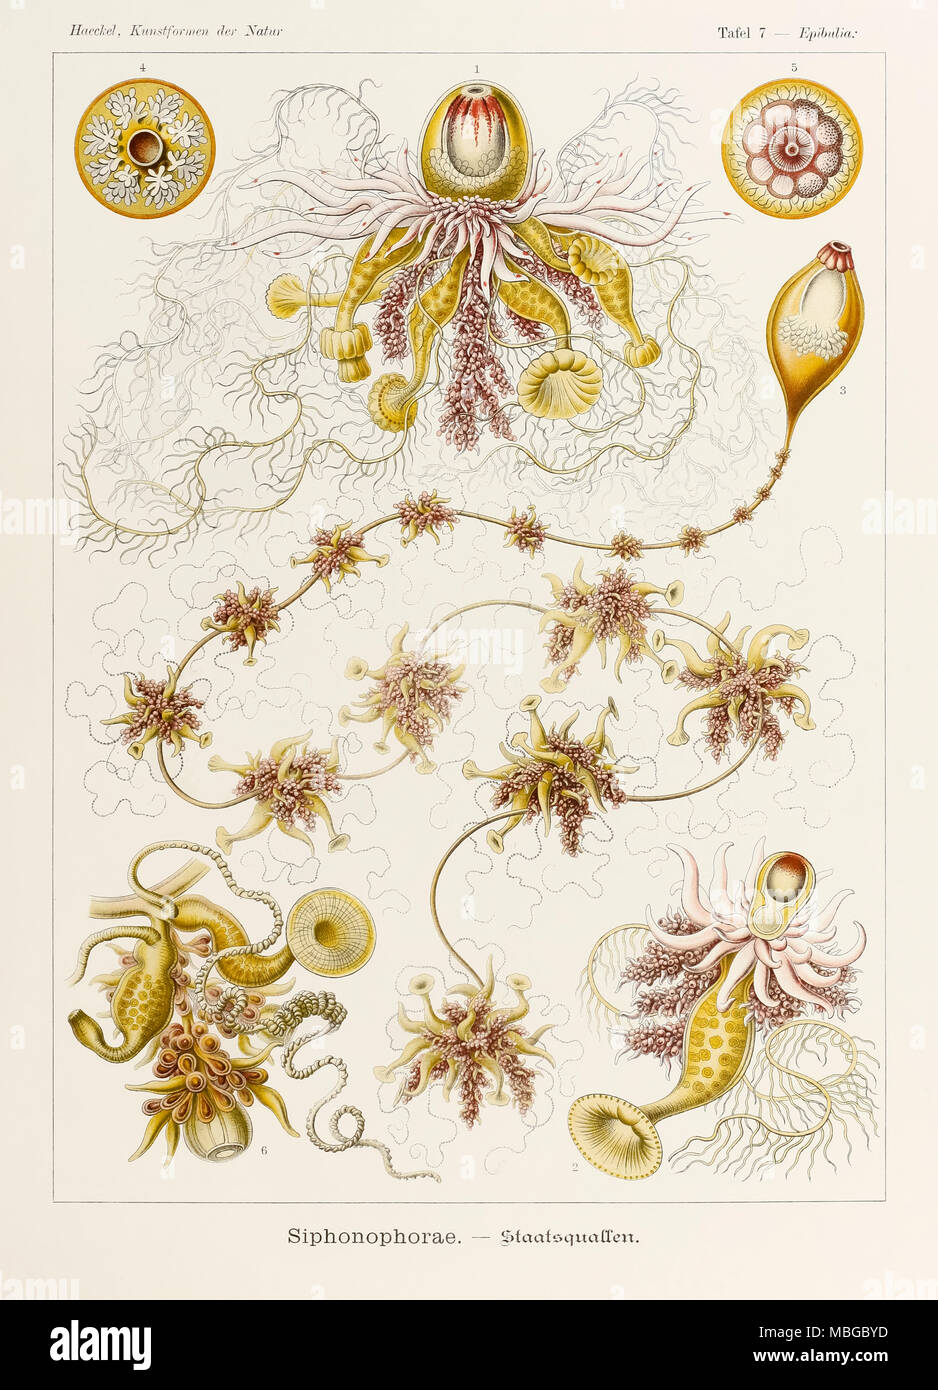 La piastra 7 Epibulia Siphonophorae da 'Kunstformen der Natur" (forme d'Arte nella Natura) illustrato da Ernst Haeckel (1834-1919). Vedere ulteriori informazioni qui di seguito. Foto Stock